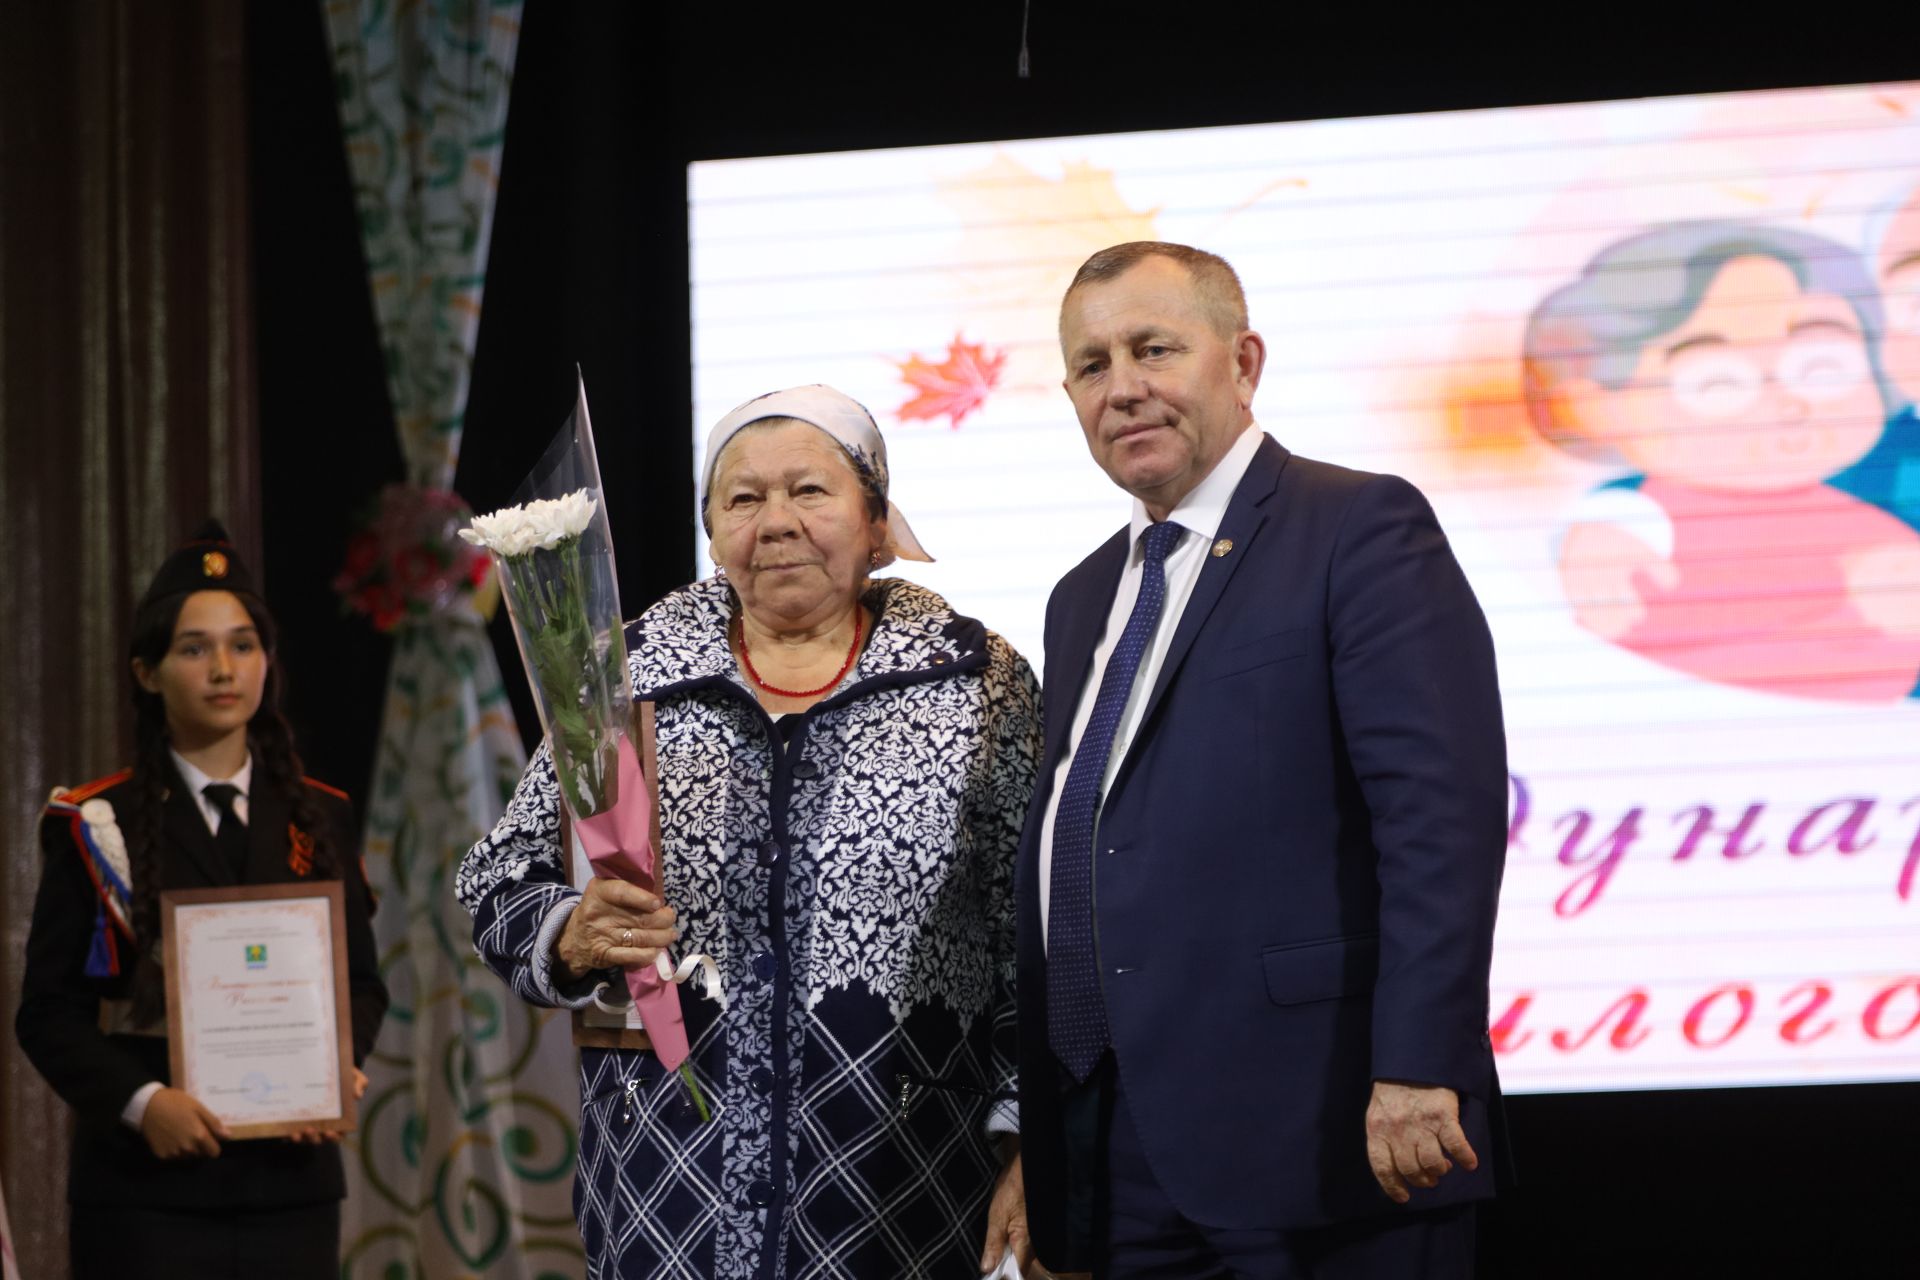 Награждение активистов, пожилых людей среди сельских поселений Мамадышского района